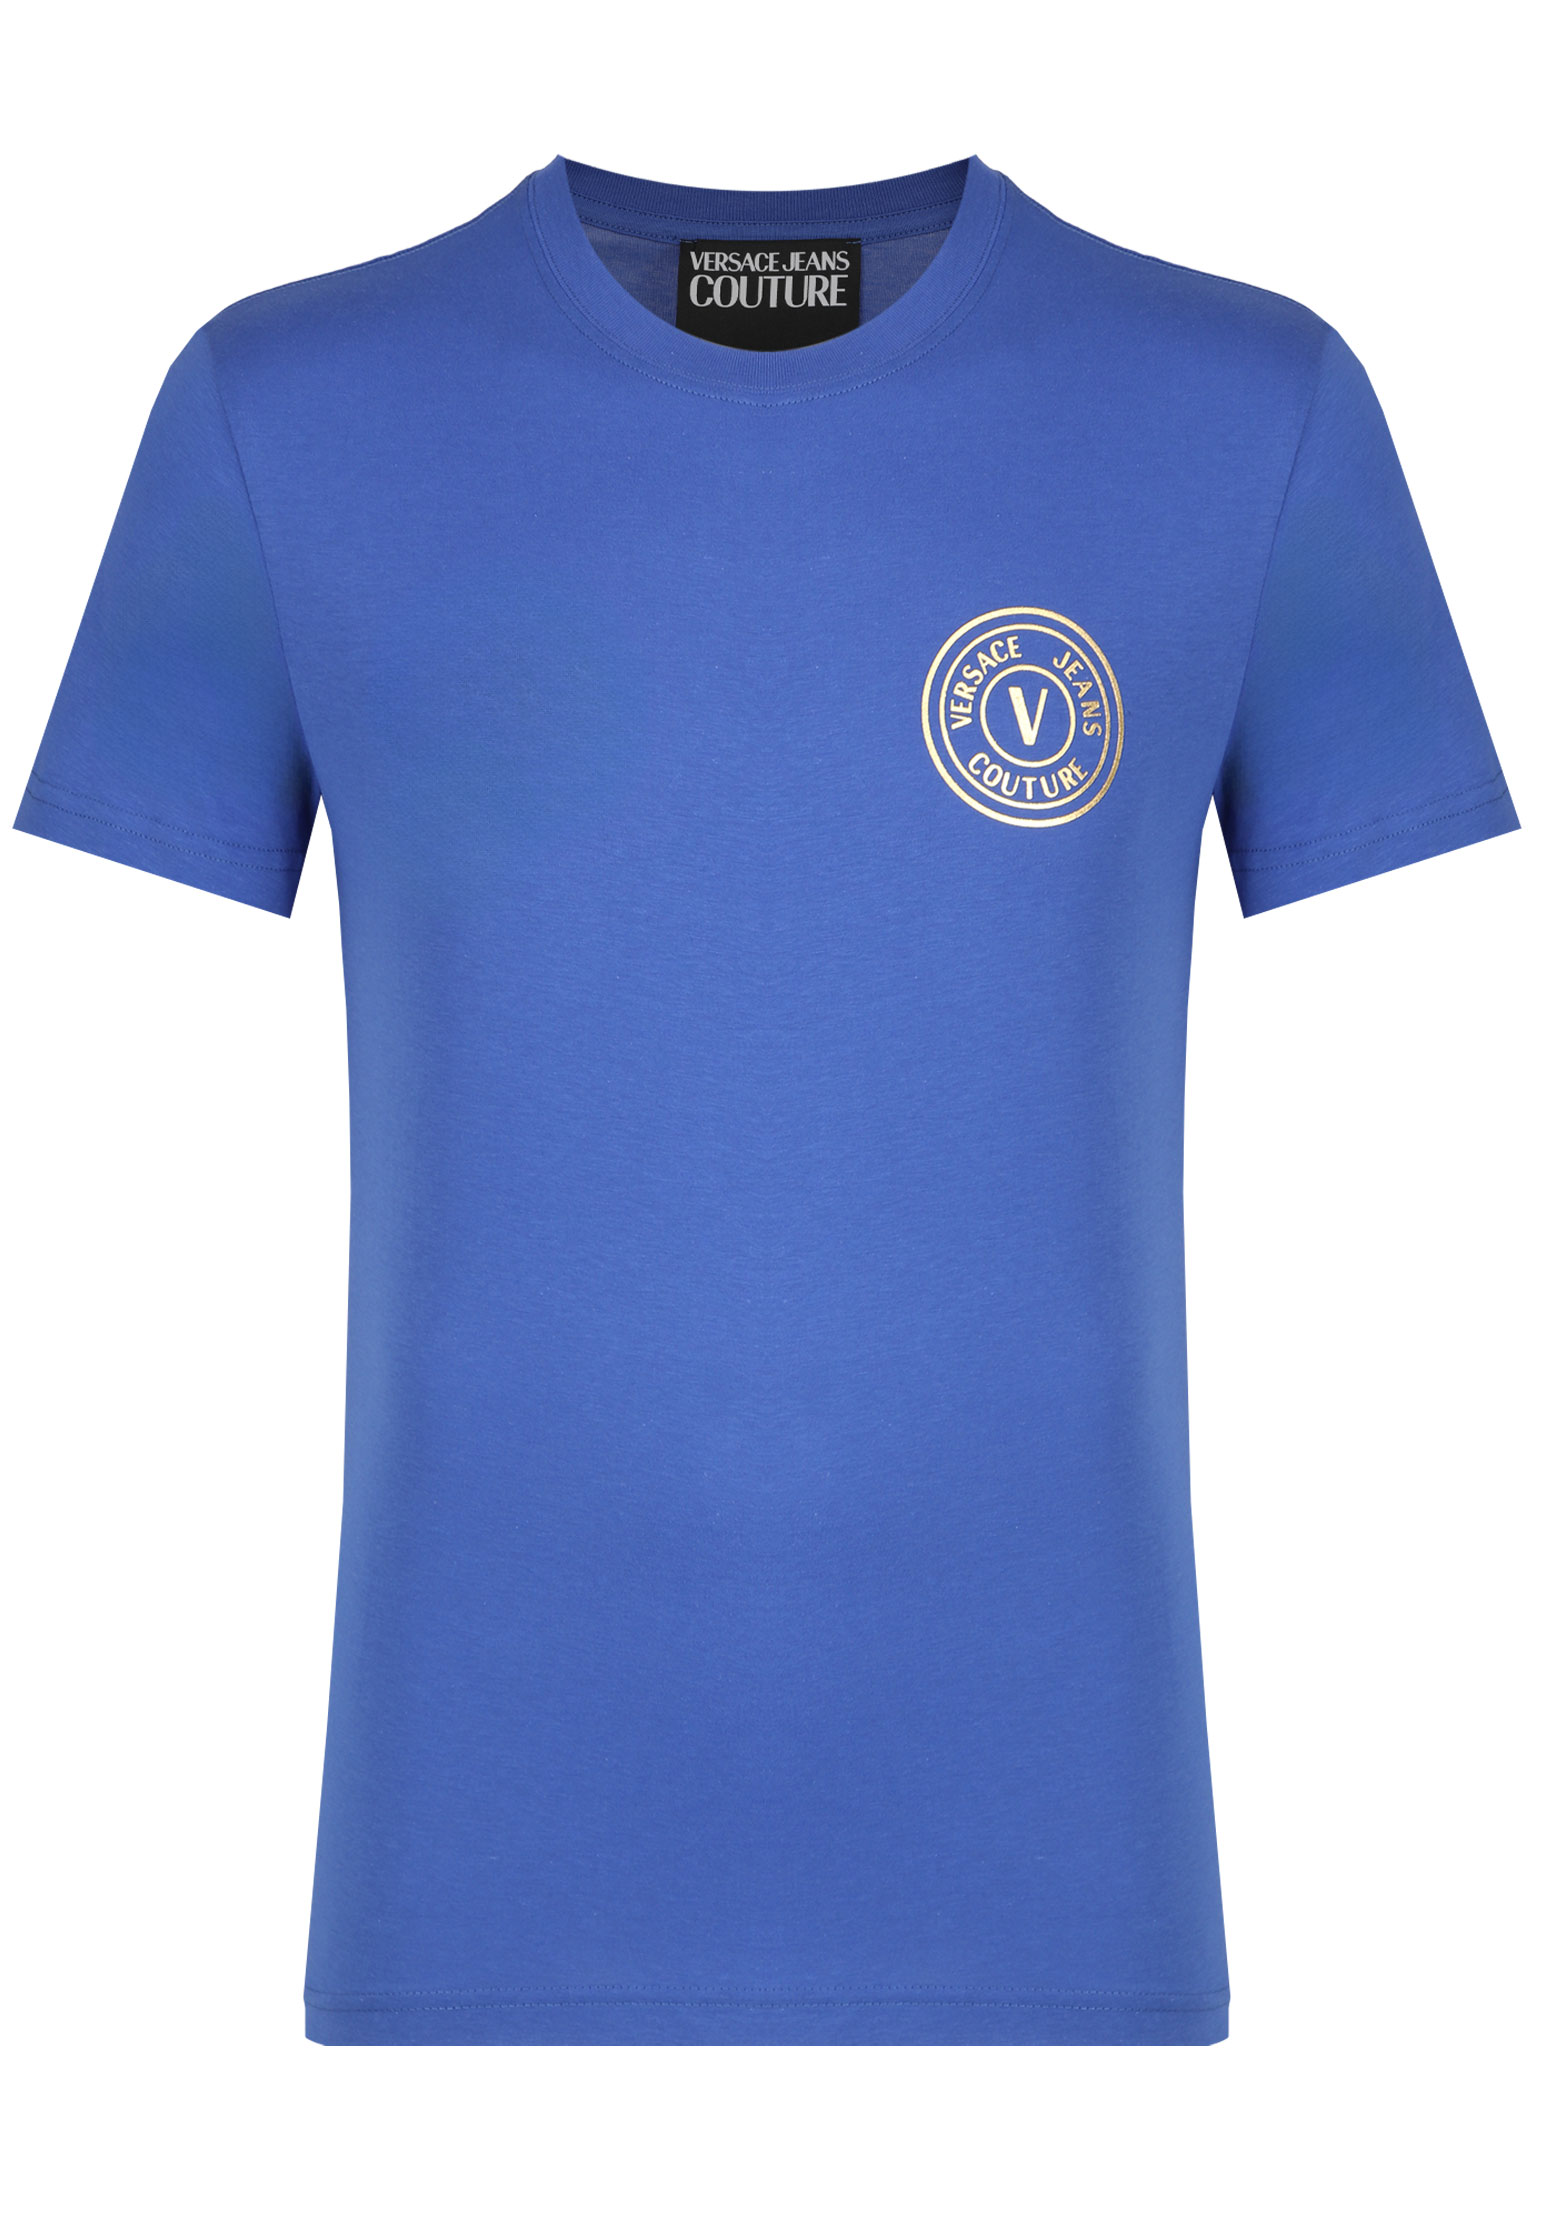 мужская футболка versace, синяя